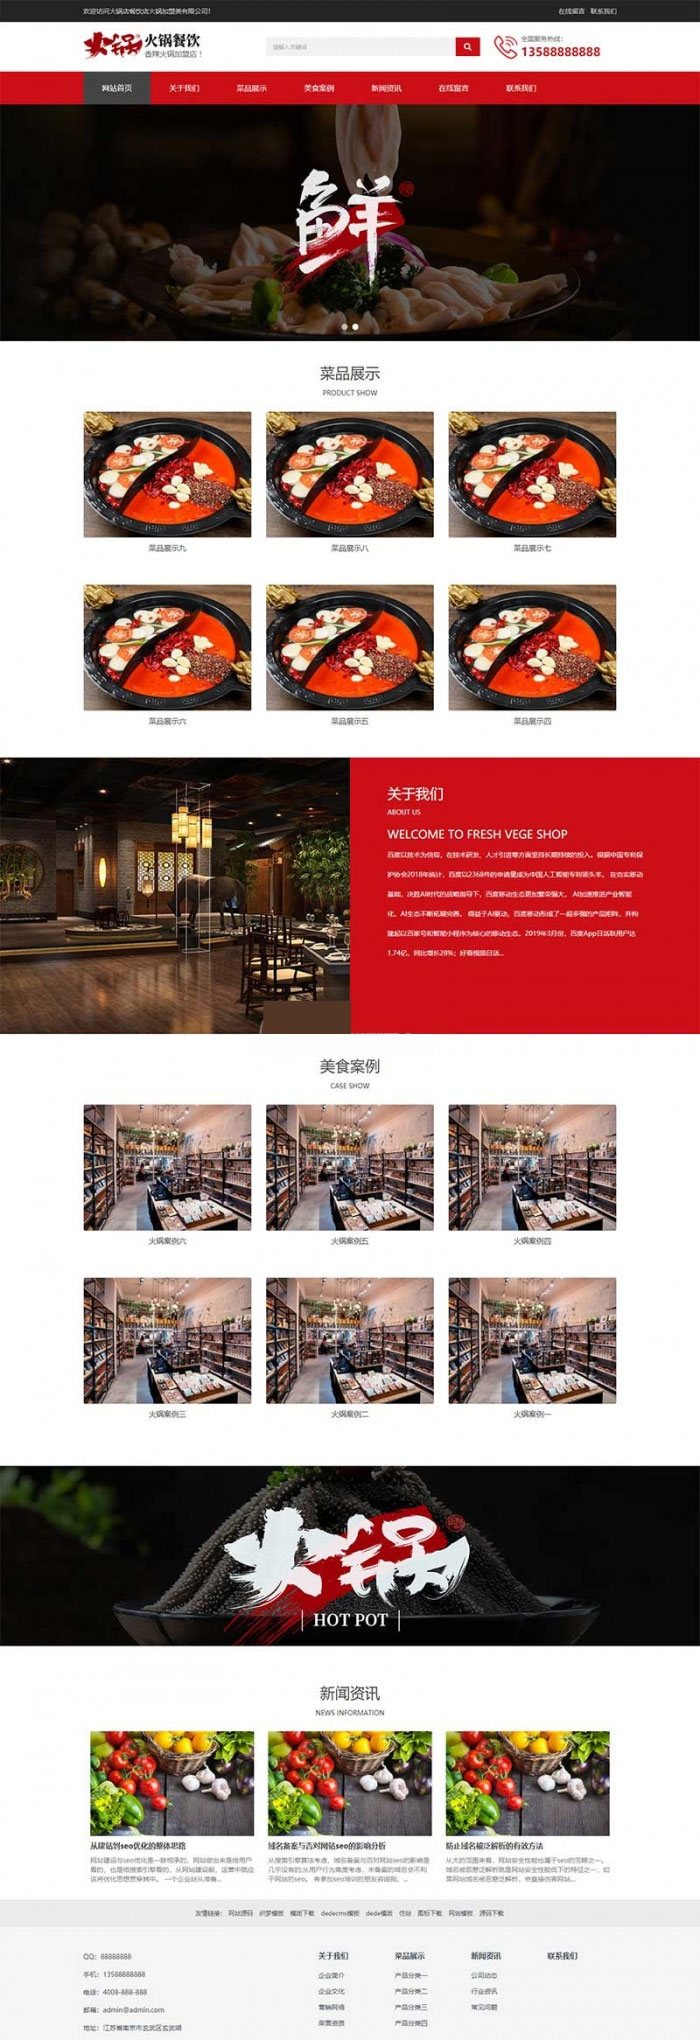 L123 织梦dedecms响应式火锅餐饮加盟店企业网站模板(自适应手机移动端)